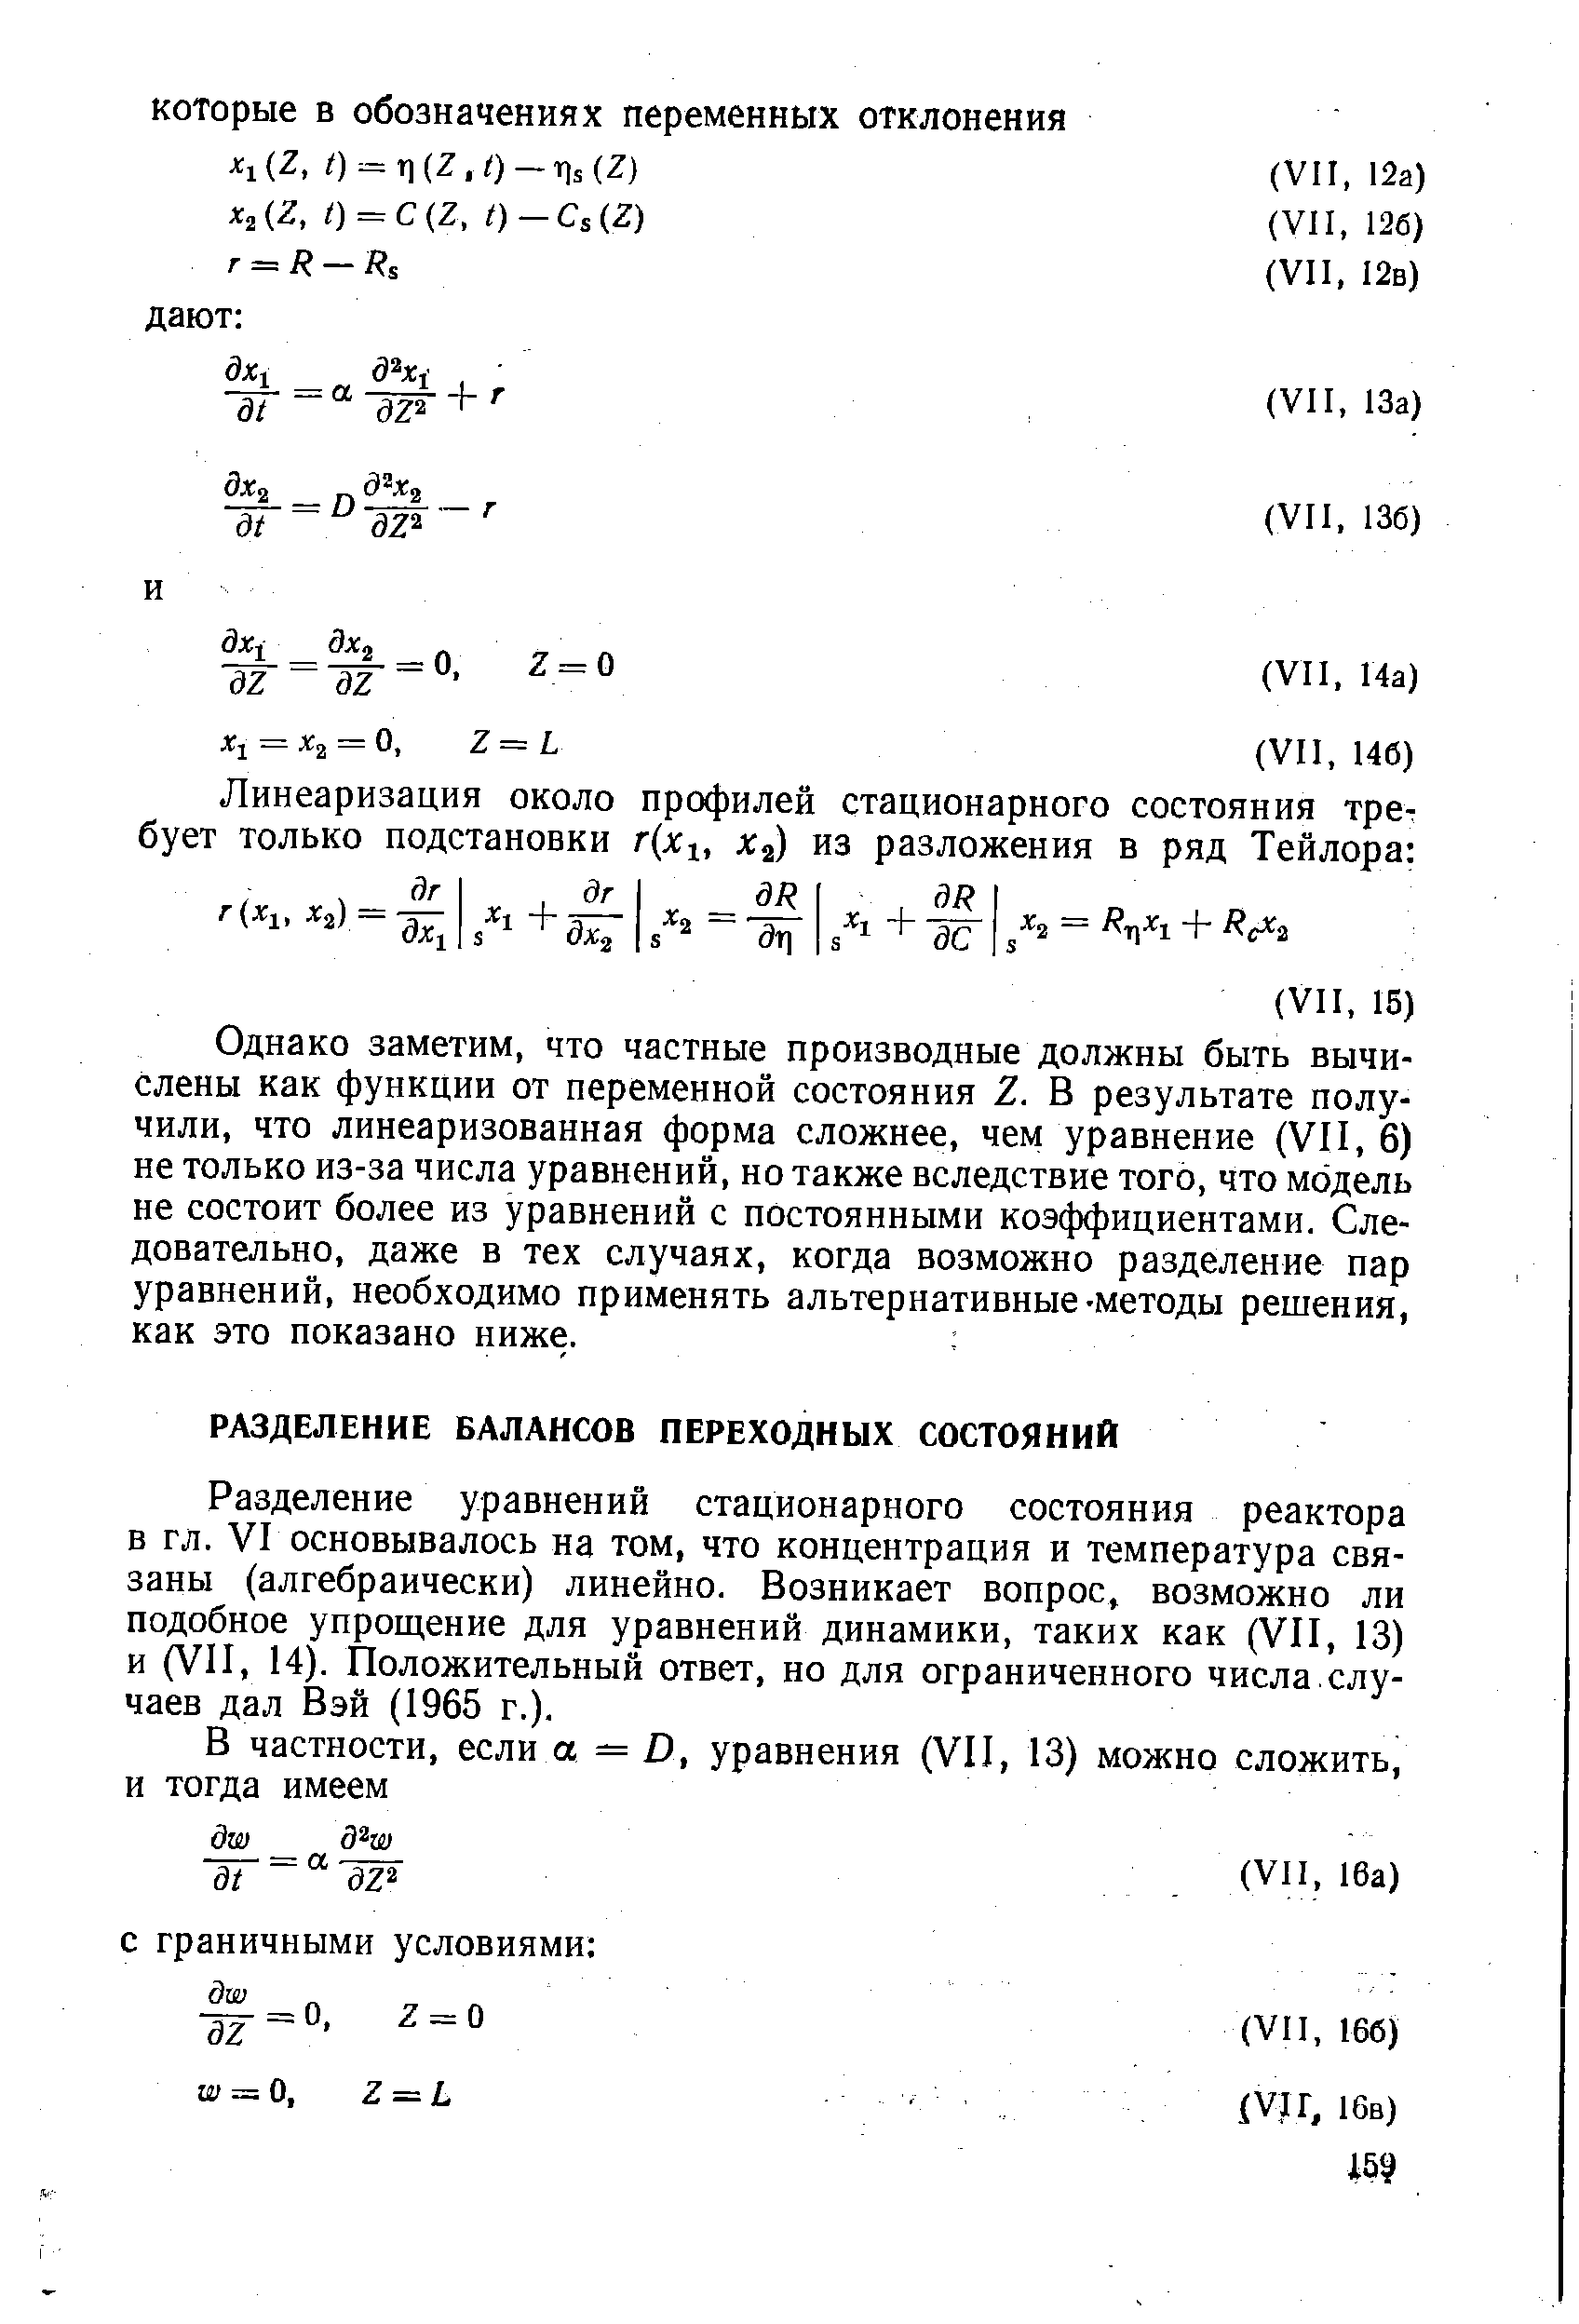 Разделение уравнений стационарного состояния реактора в гл. VI основывалось на том, что концентрация и температура связаны (алгебраически) линейно. Возникает вопрос, возможно ли подобное упрощение для уравнений динамики, таких как (VII, 13) и (VII, 14). Положительный ответ, но для ограниченного числа.случаев дал Вэй (1965 г.).